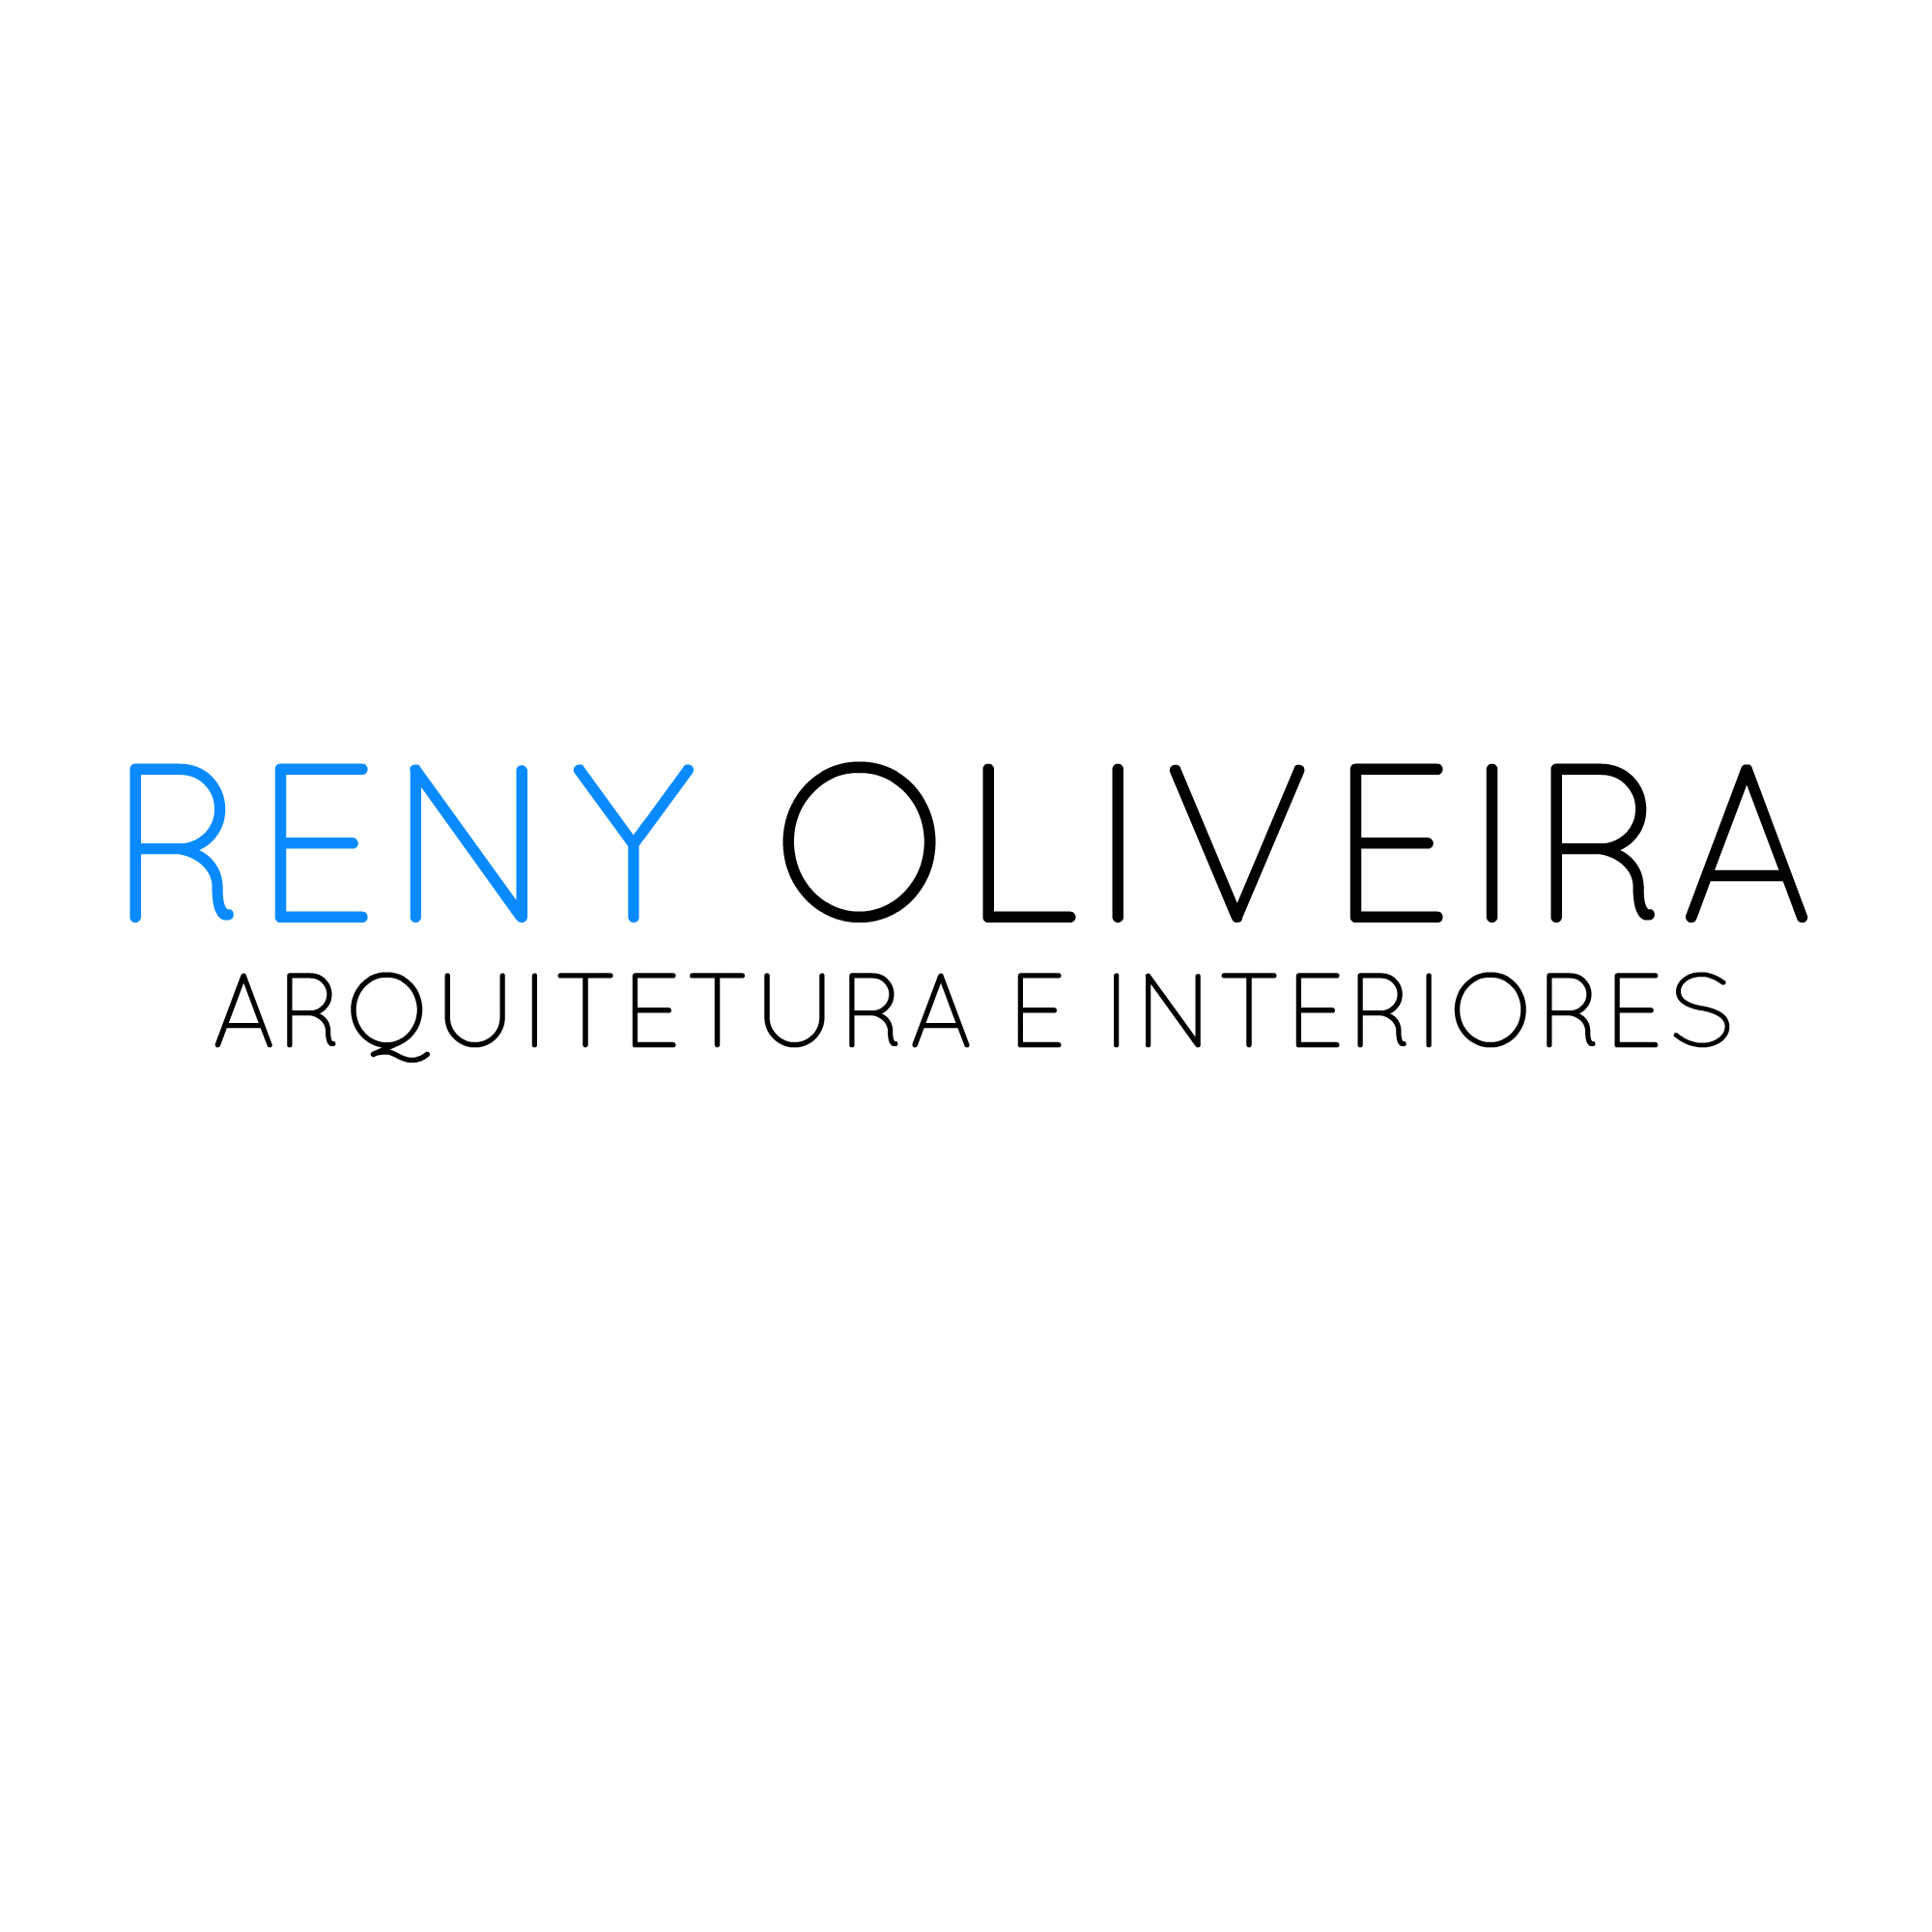 RENY OLIVEIRA - ARQUITETURA E DESIGN DE INTERIORES